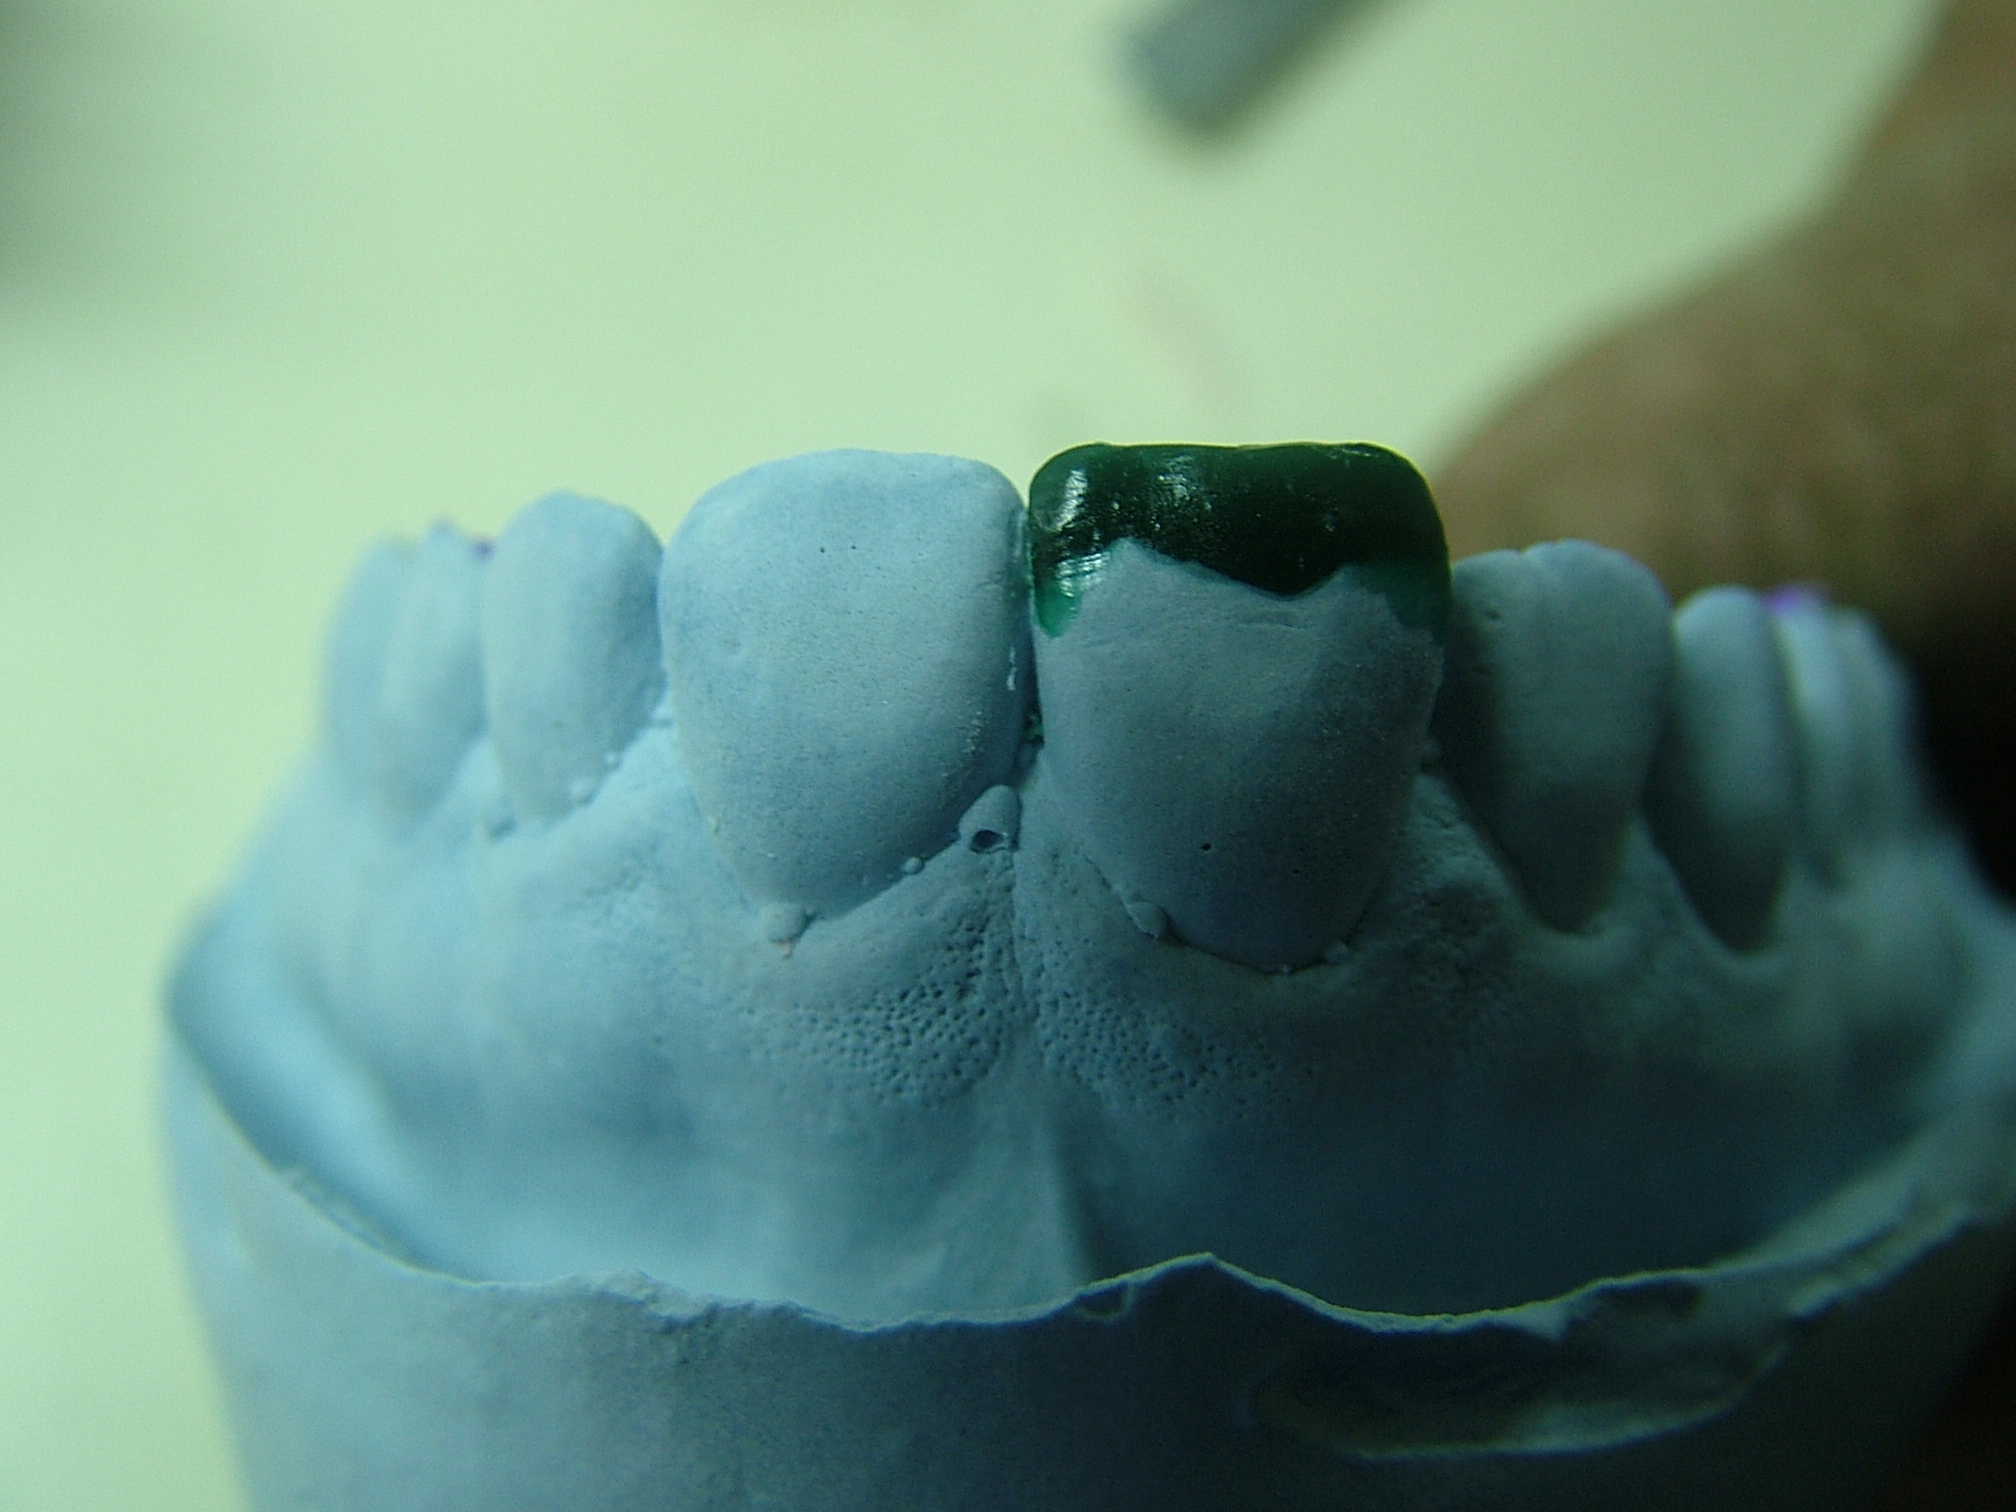 Ricostruzione adesiva nei traumi dentali